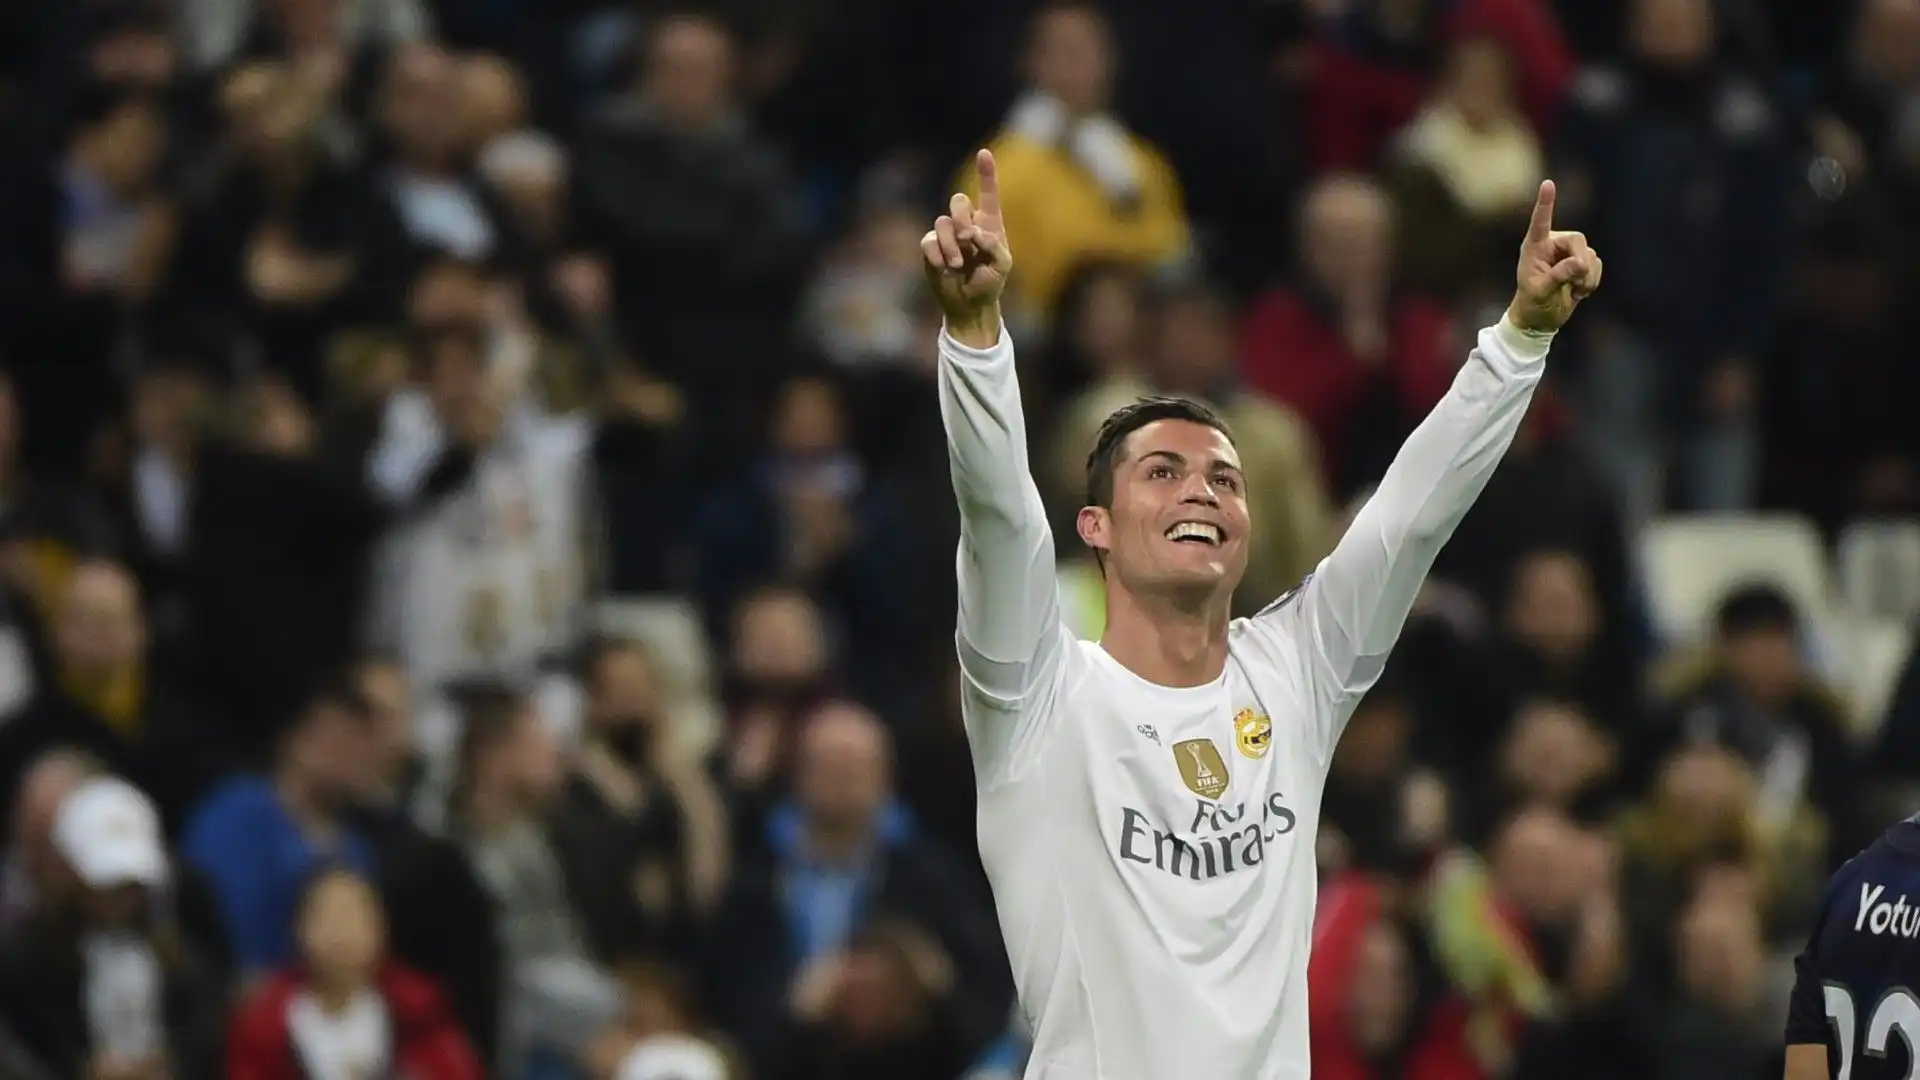 2015/16 Cristiano Ronaldo (Real Madrid) 16 gol in 12 presenze